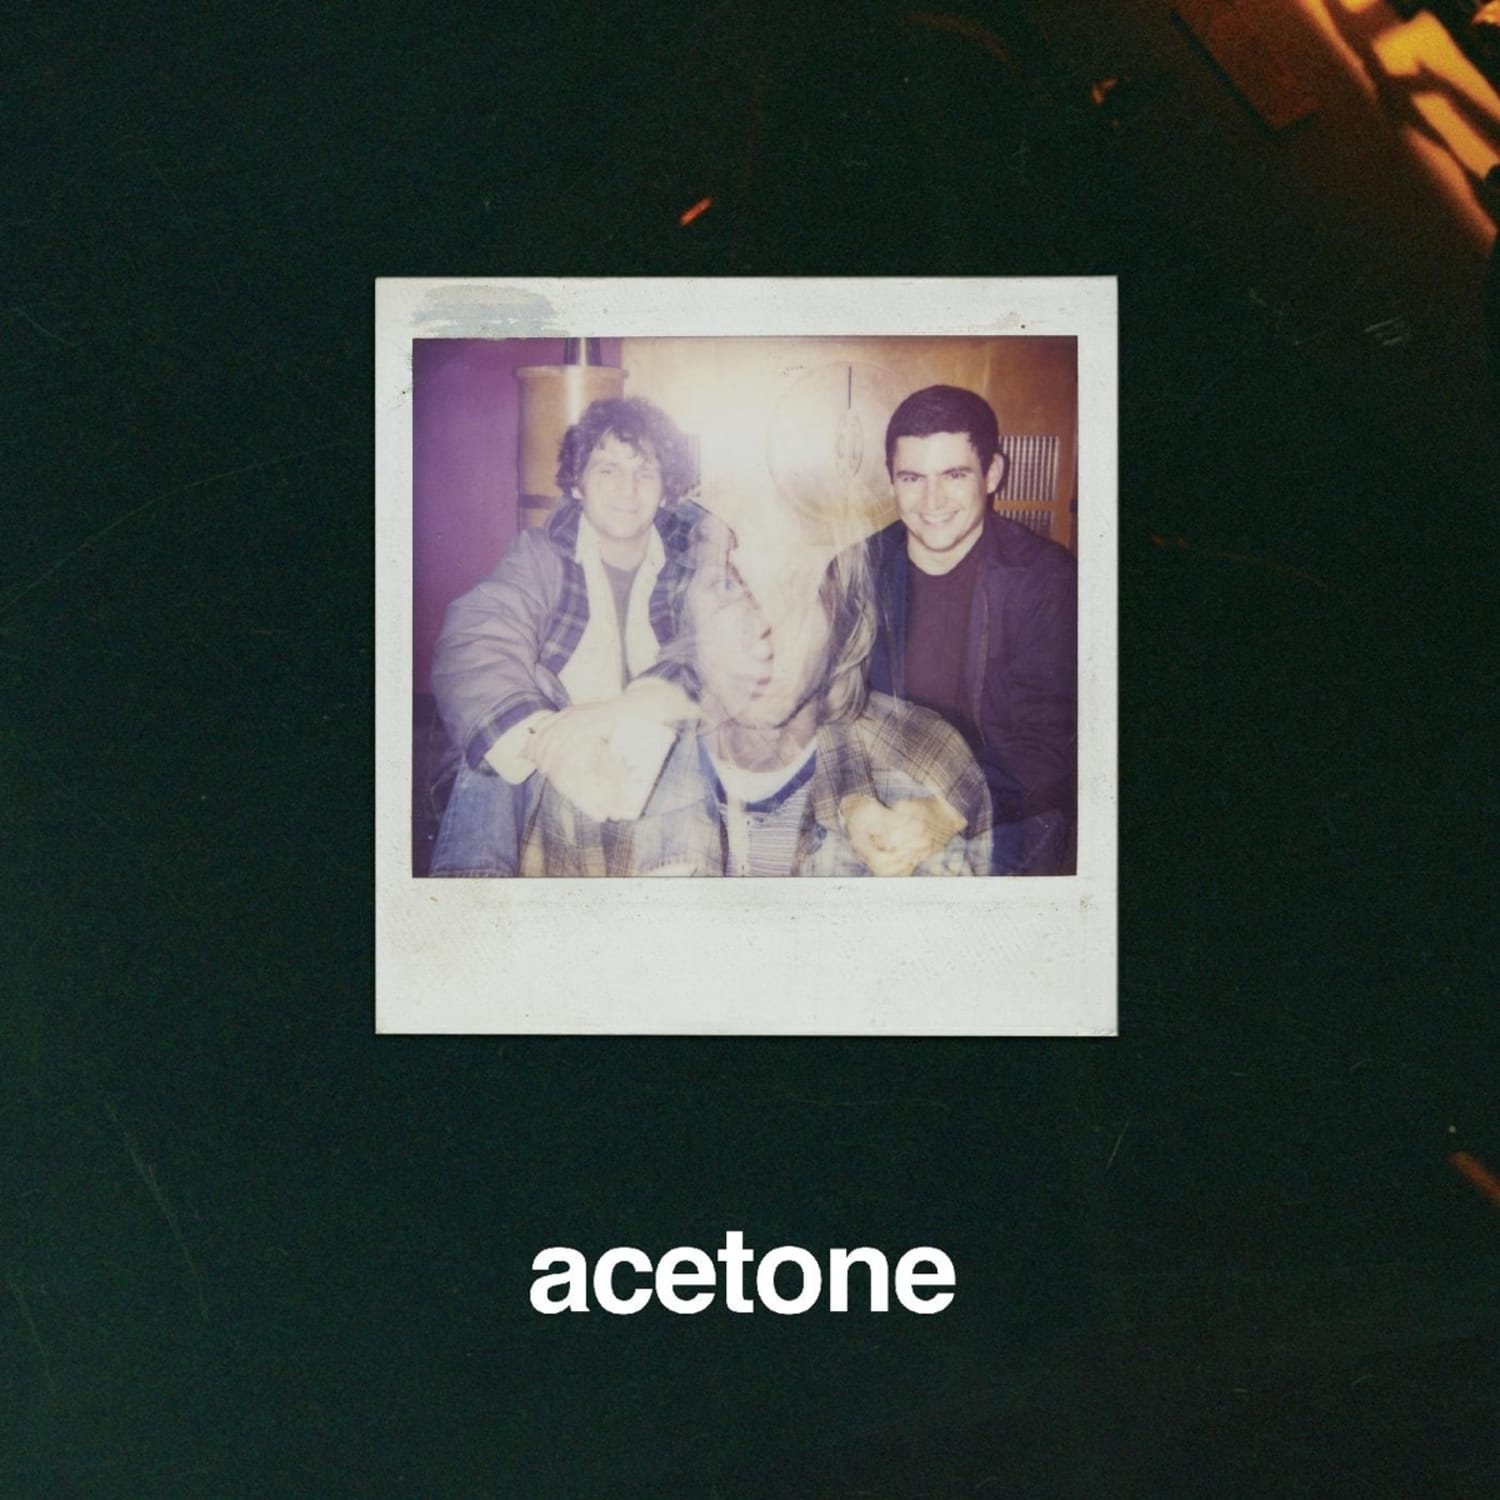 Acetone - I M STILL WAITING 